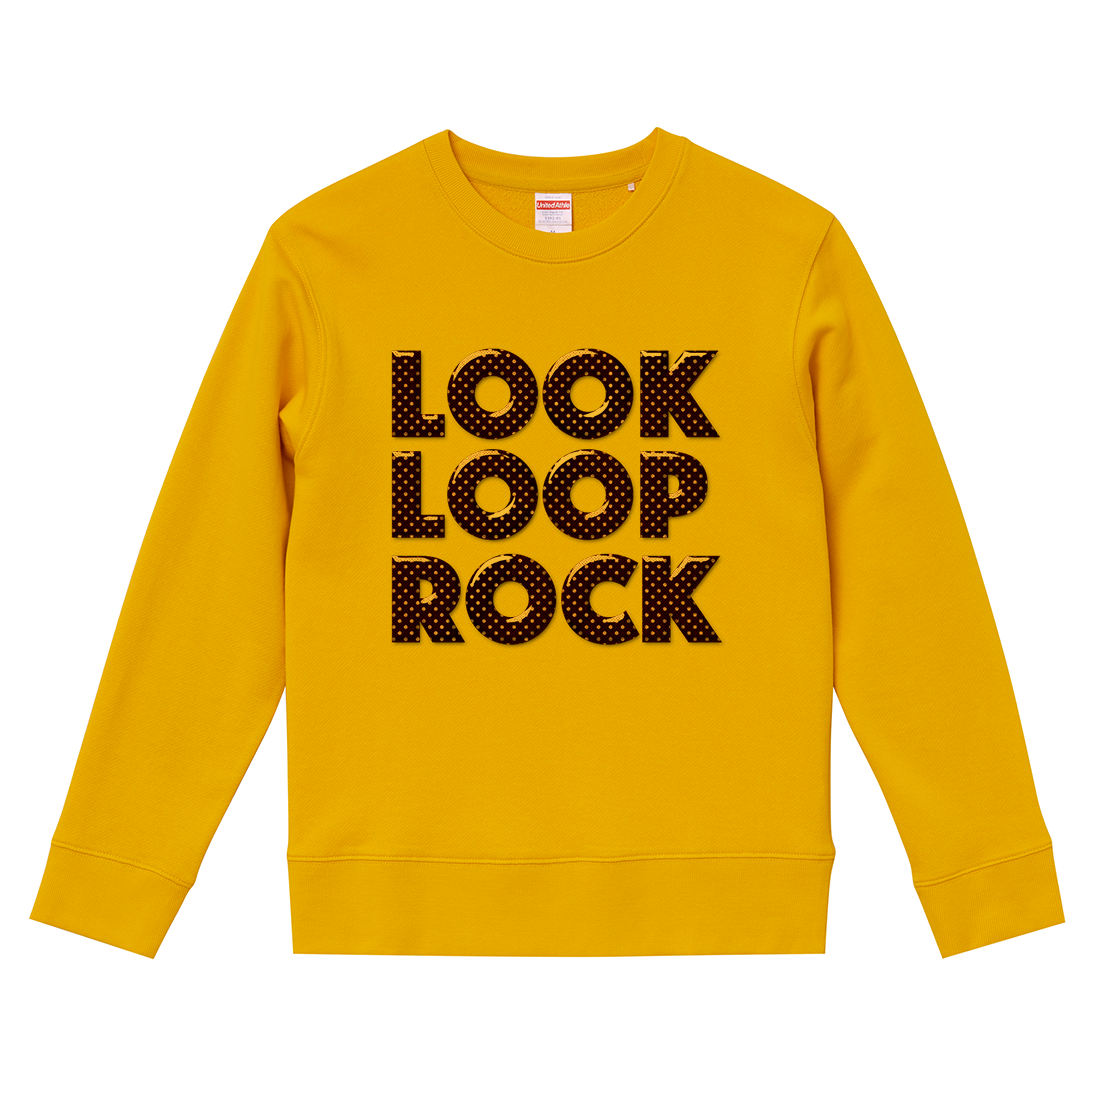 190504 – LOOK LOOP ROCK